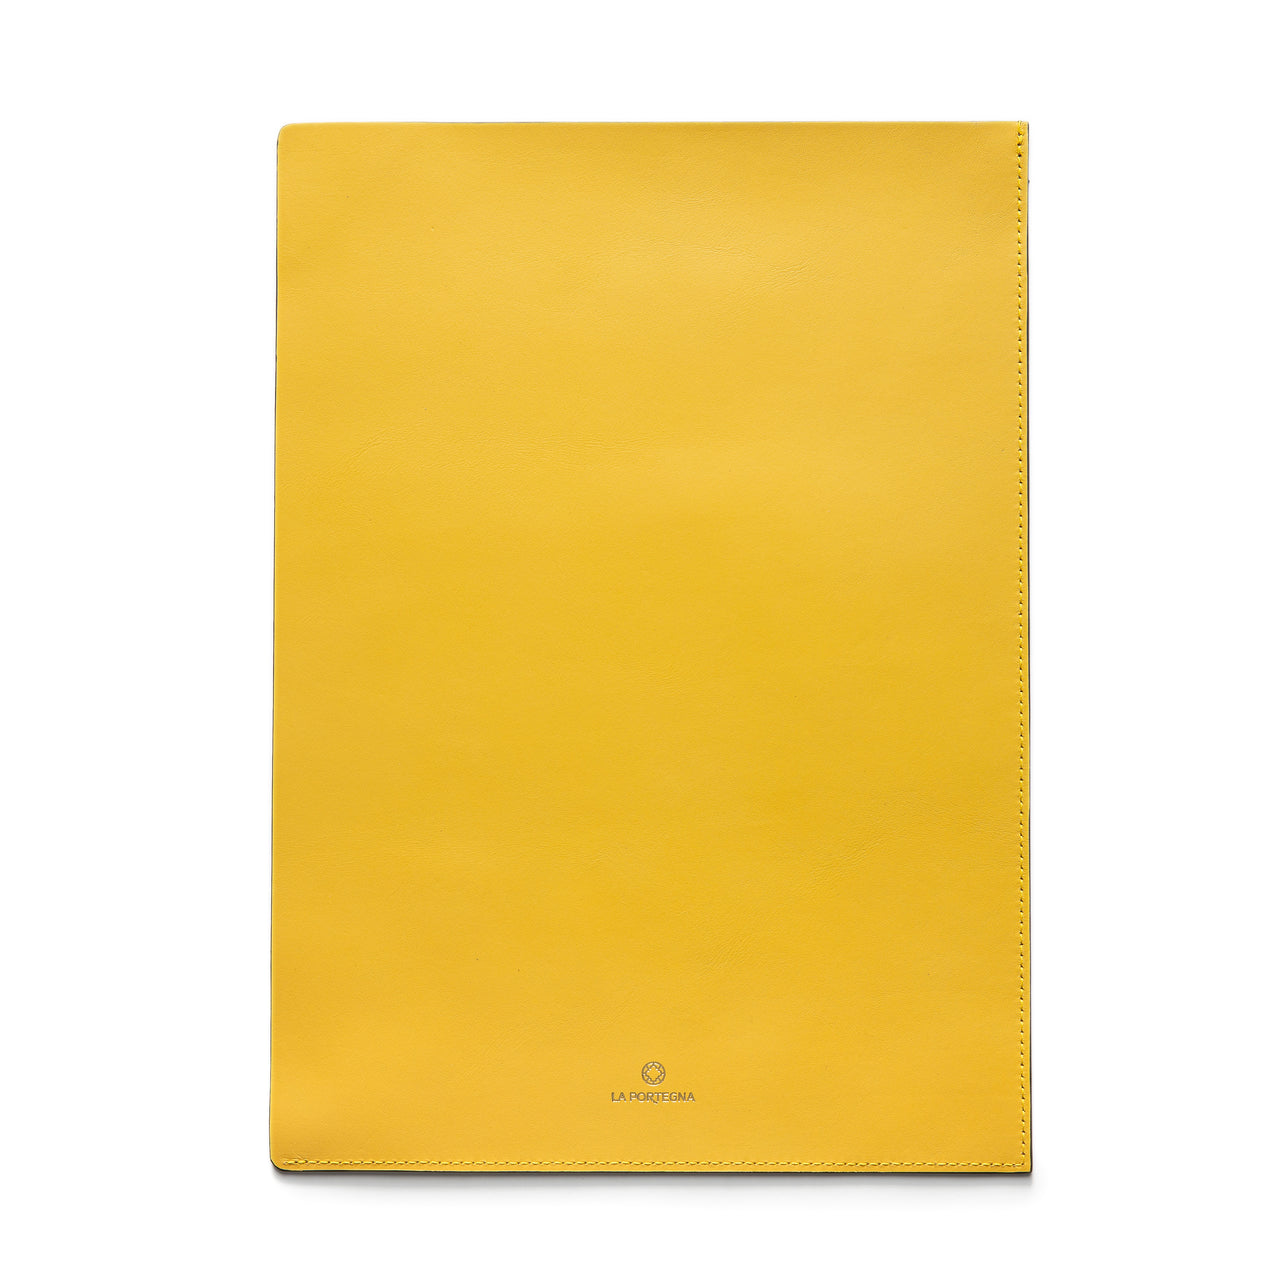 Porte-documents jaune